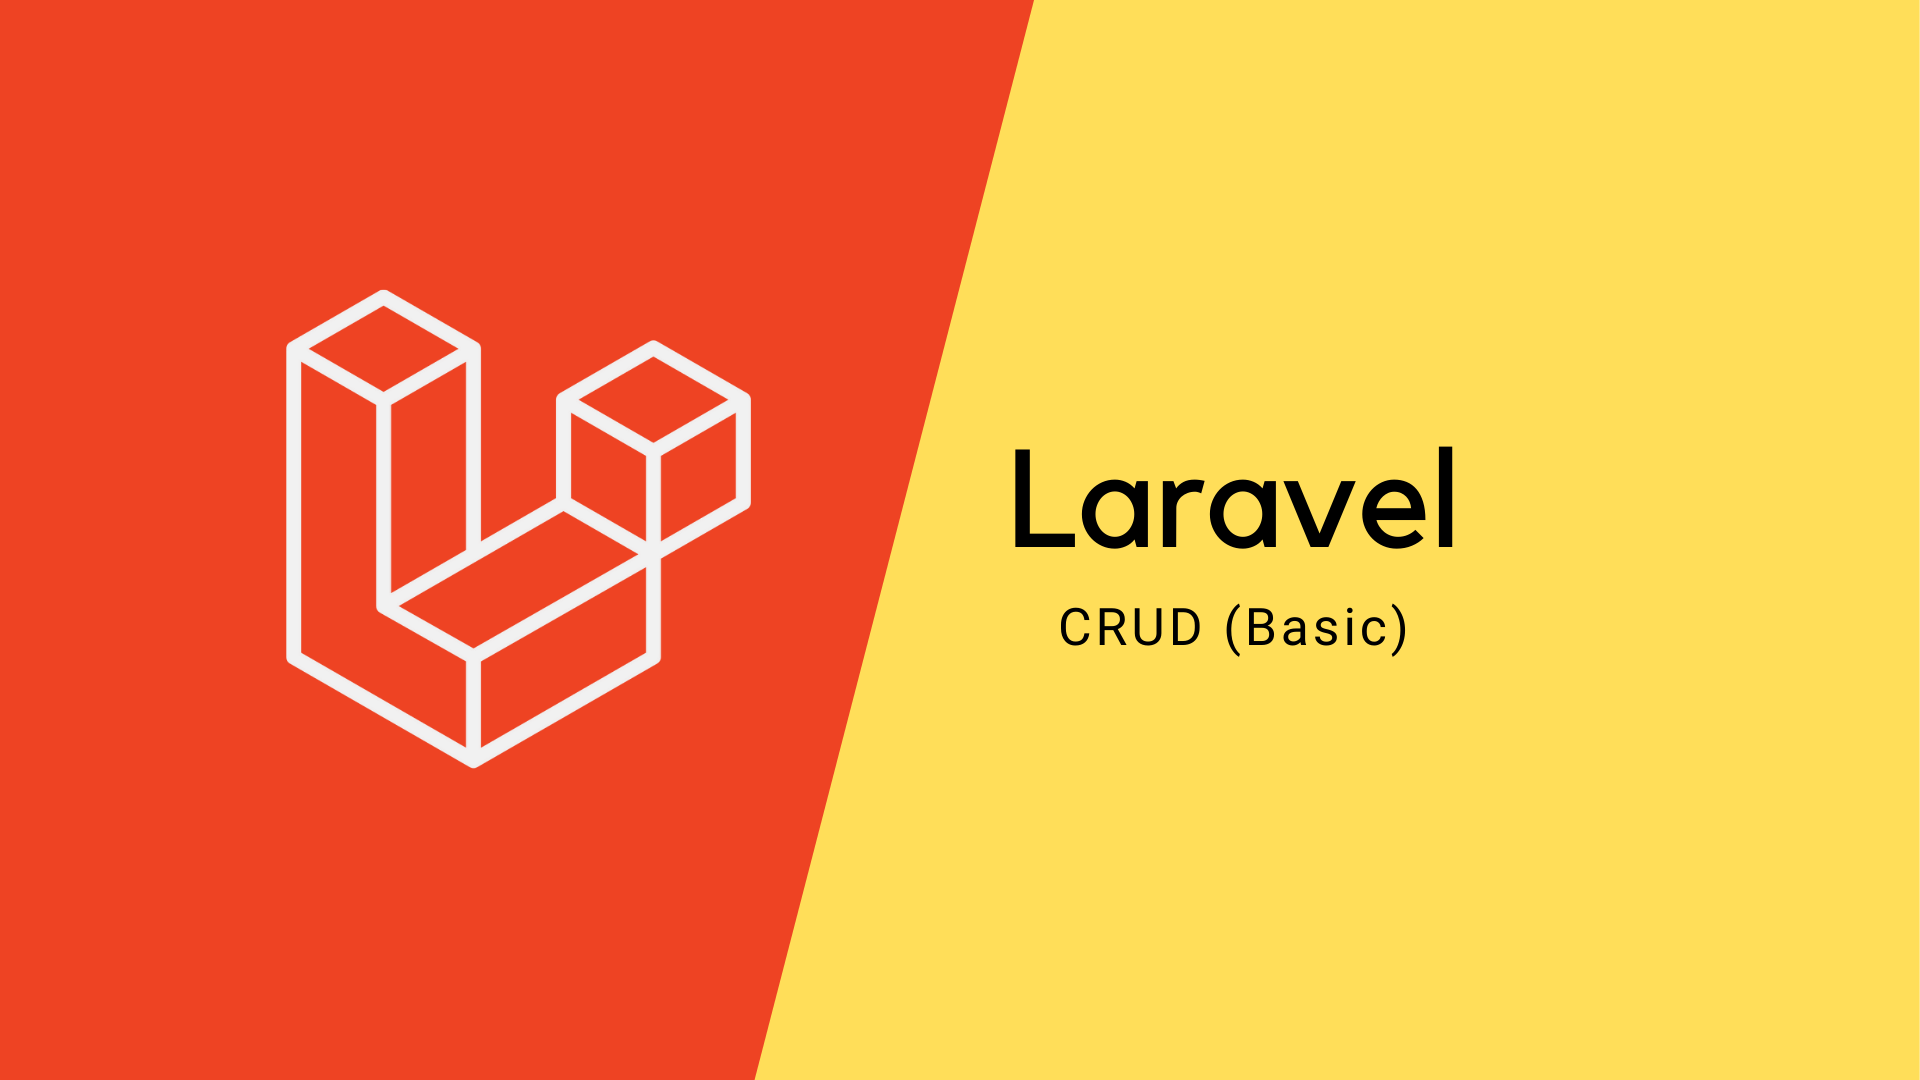 Laravel CRUD (Basic) course image